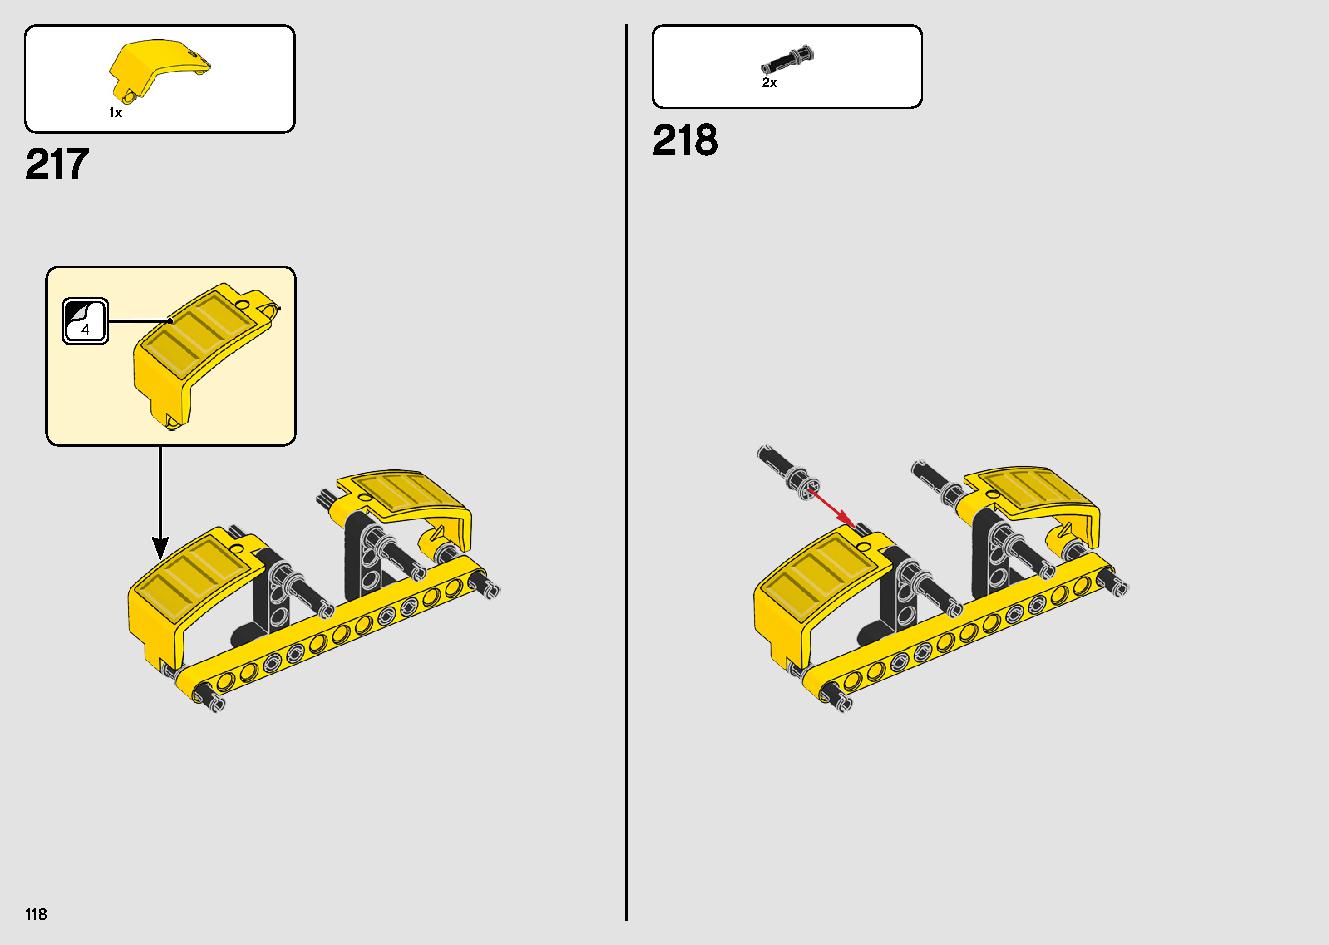 移動式クレーン車 42108 レゴの商品情報 レゴの説明書・組立方法 118 page